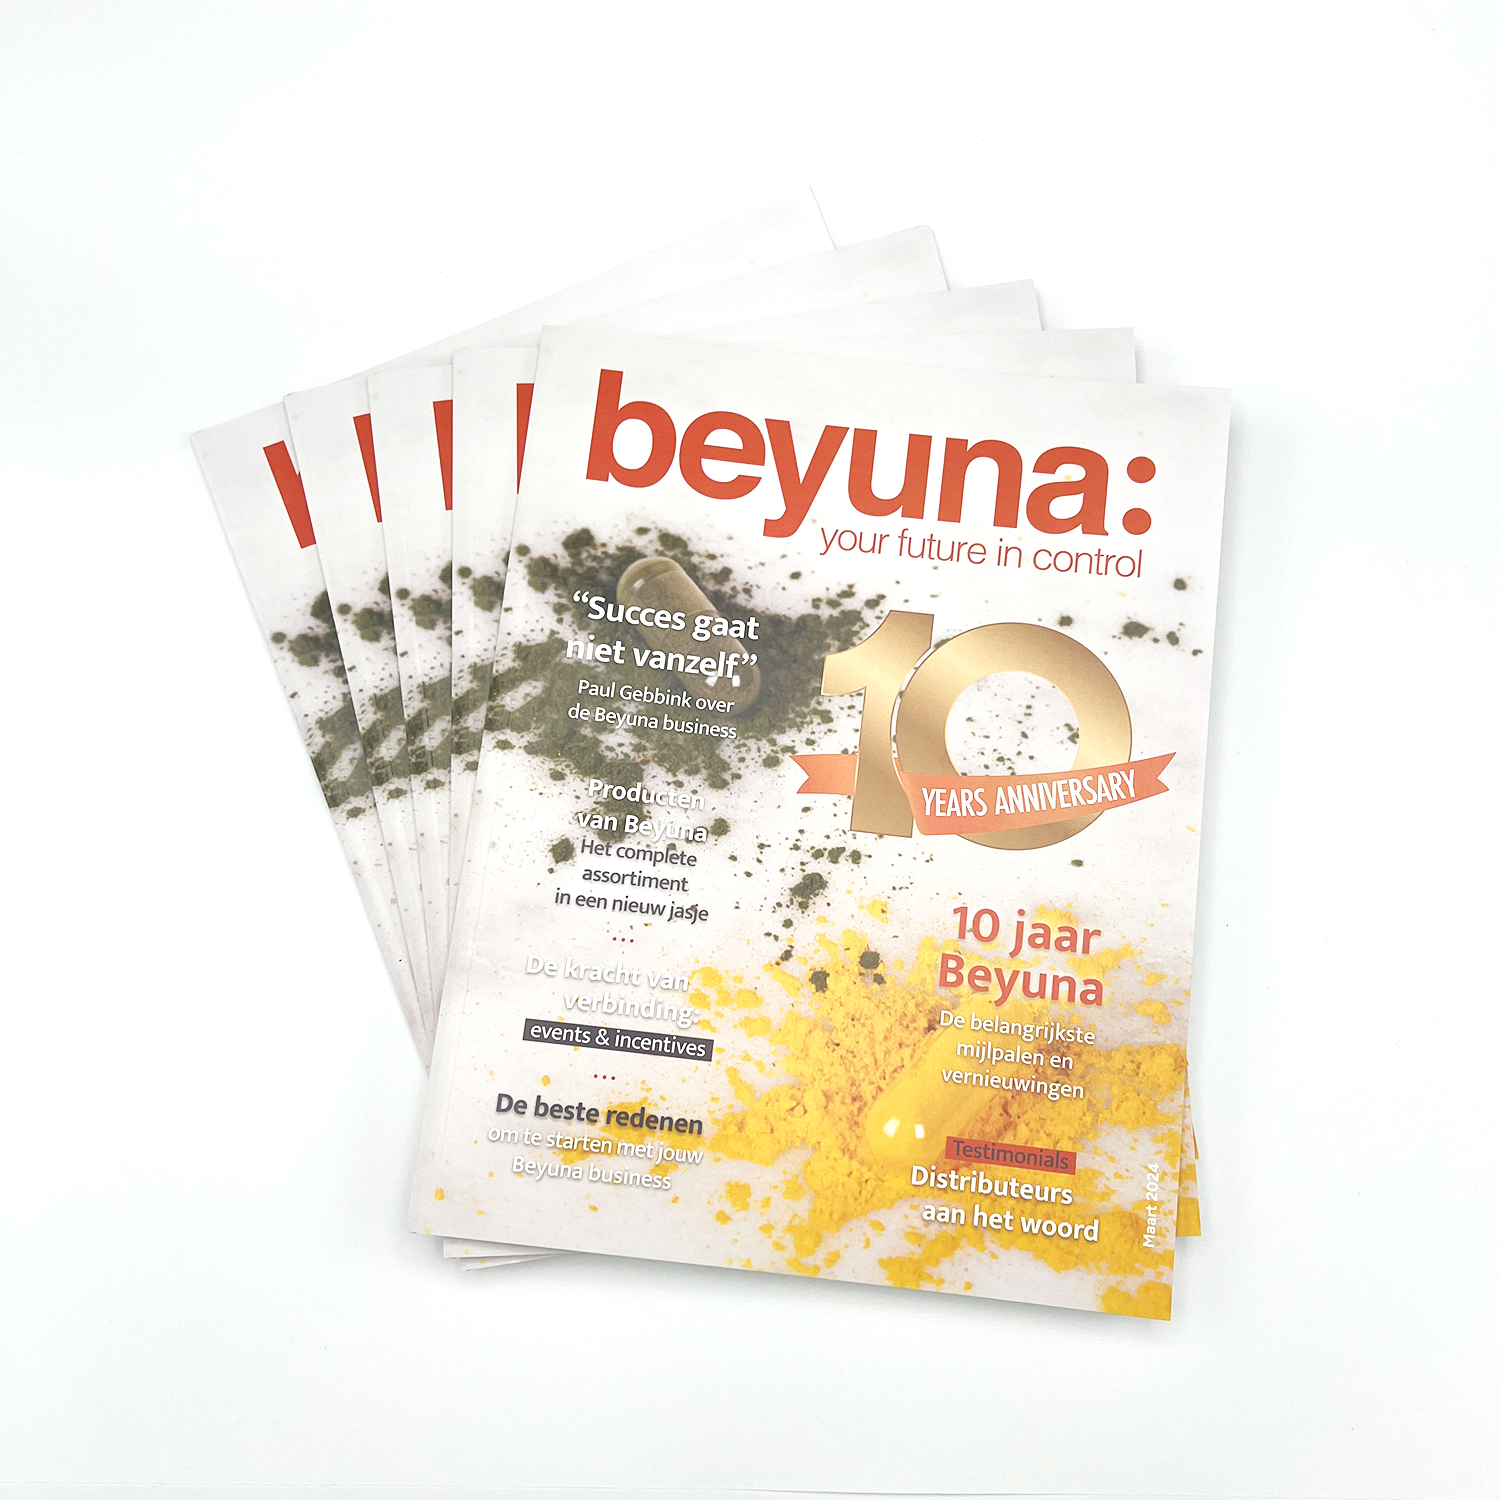 Beyuna 10 jaar magazine bundel